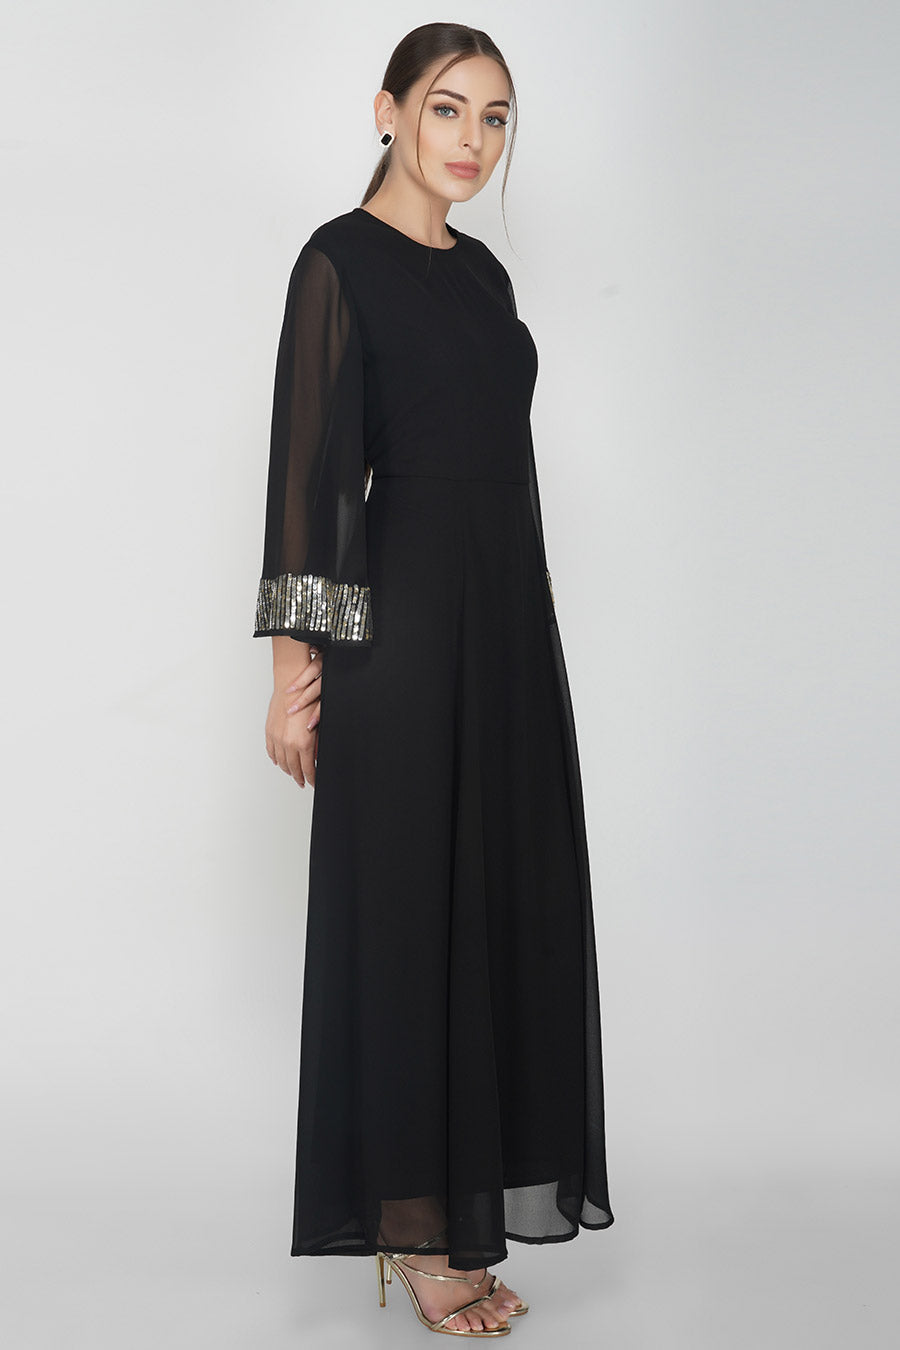 Black Sequin Embellished Gown Dress